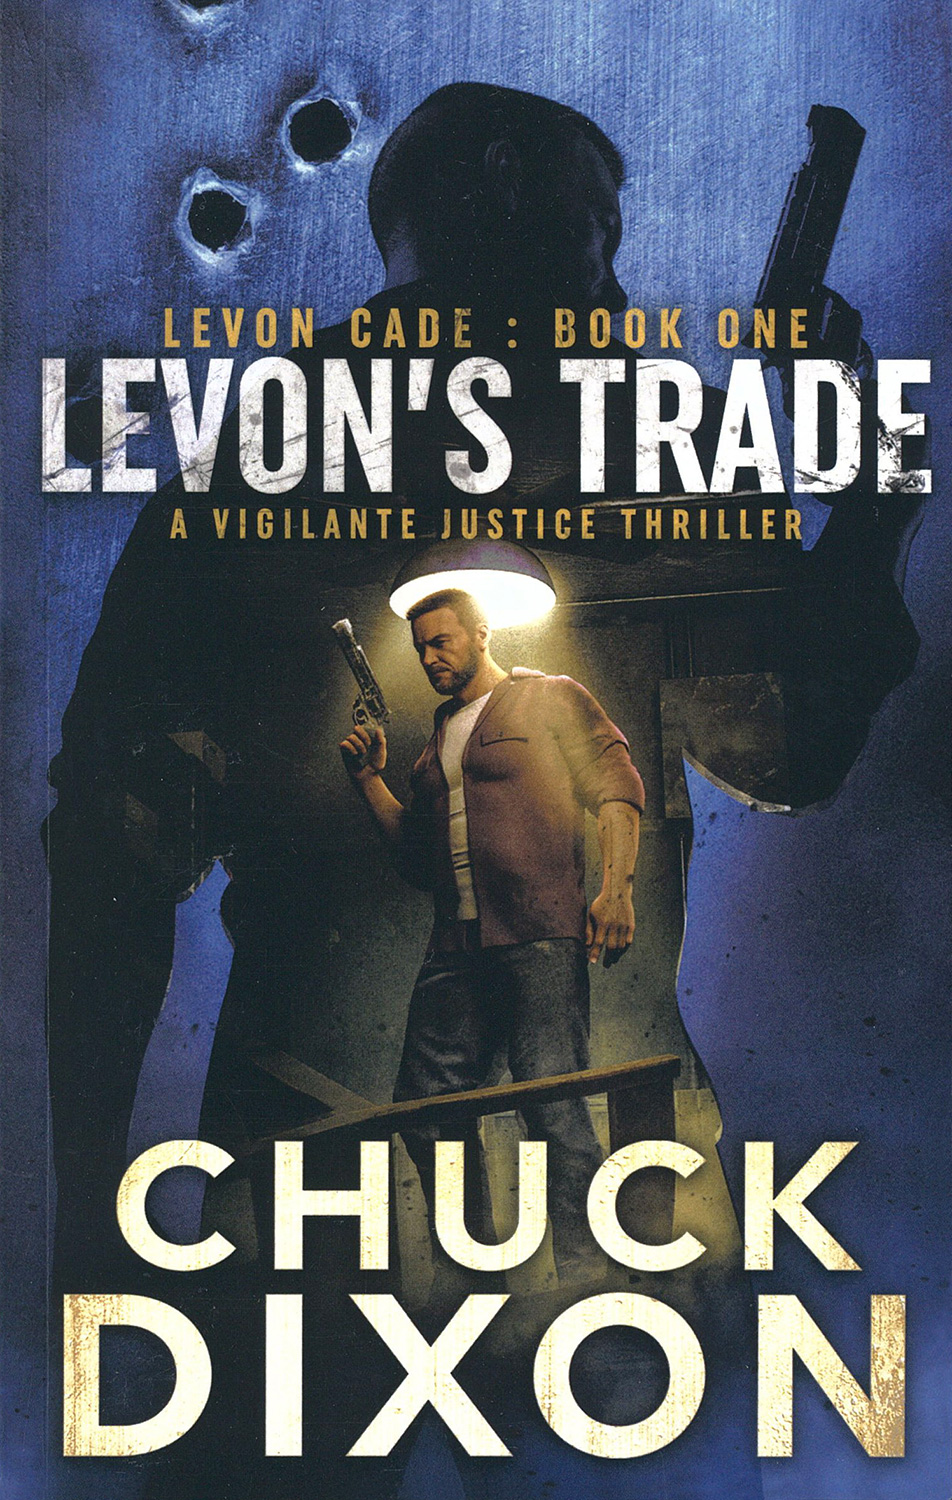 Chuck Dixon's Levon Cade series – The Pulp Super-Fan